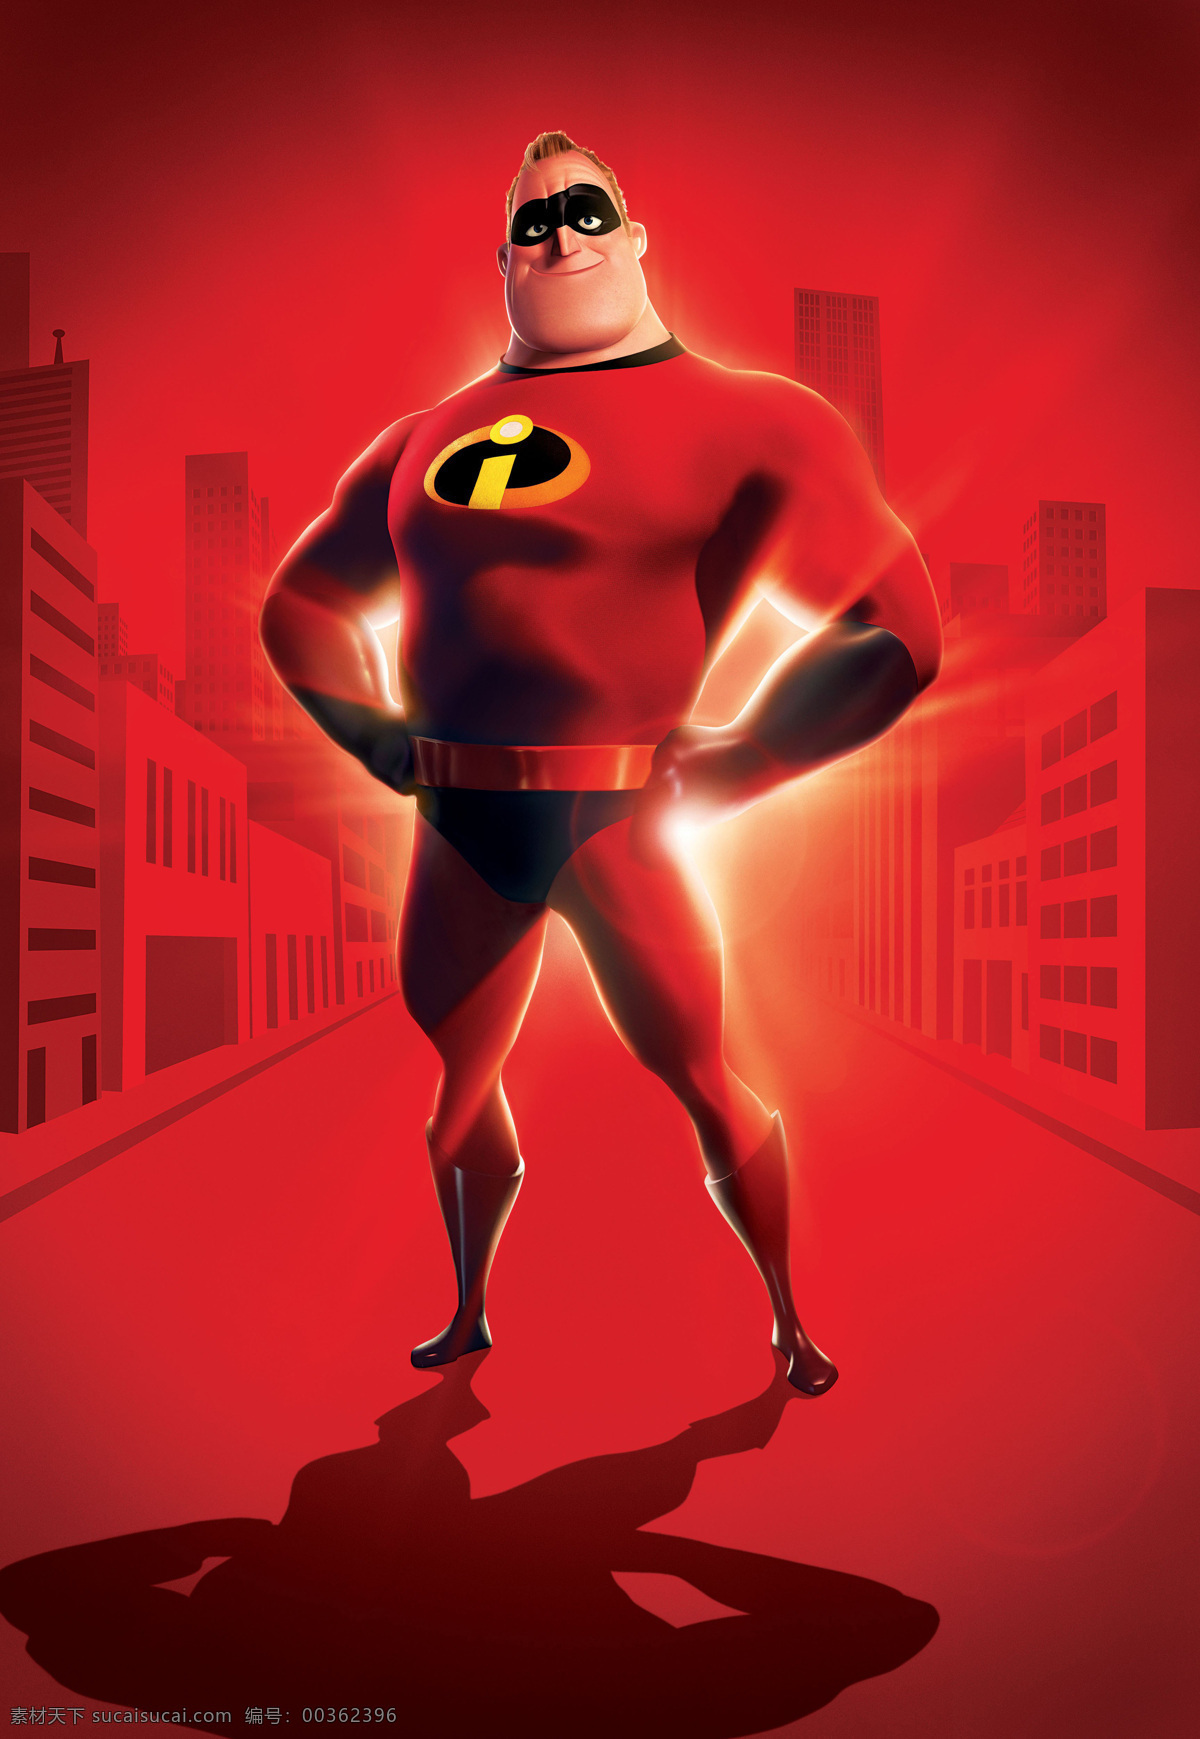 超人总动员 超人特攻队 超人家族 动画 皮克斯 电影 电影海报 海报 pixar 动漫动画